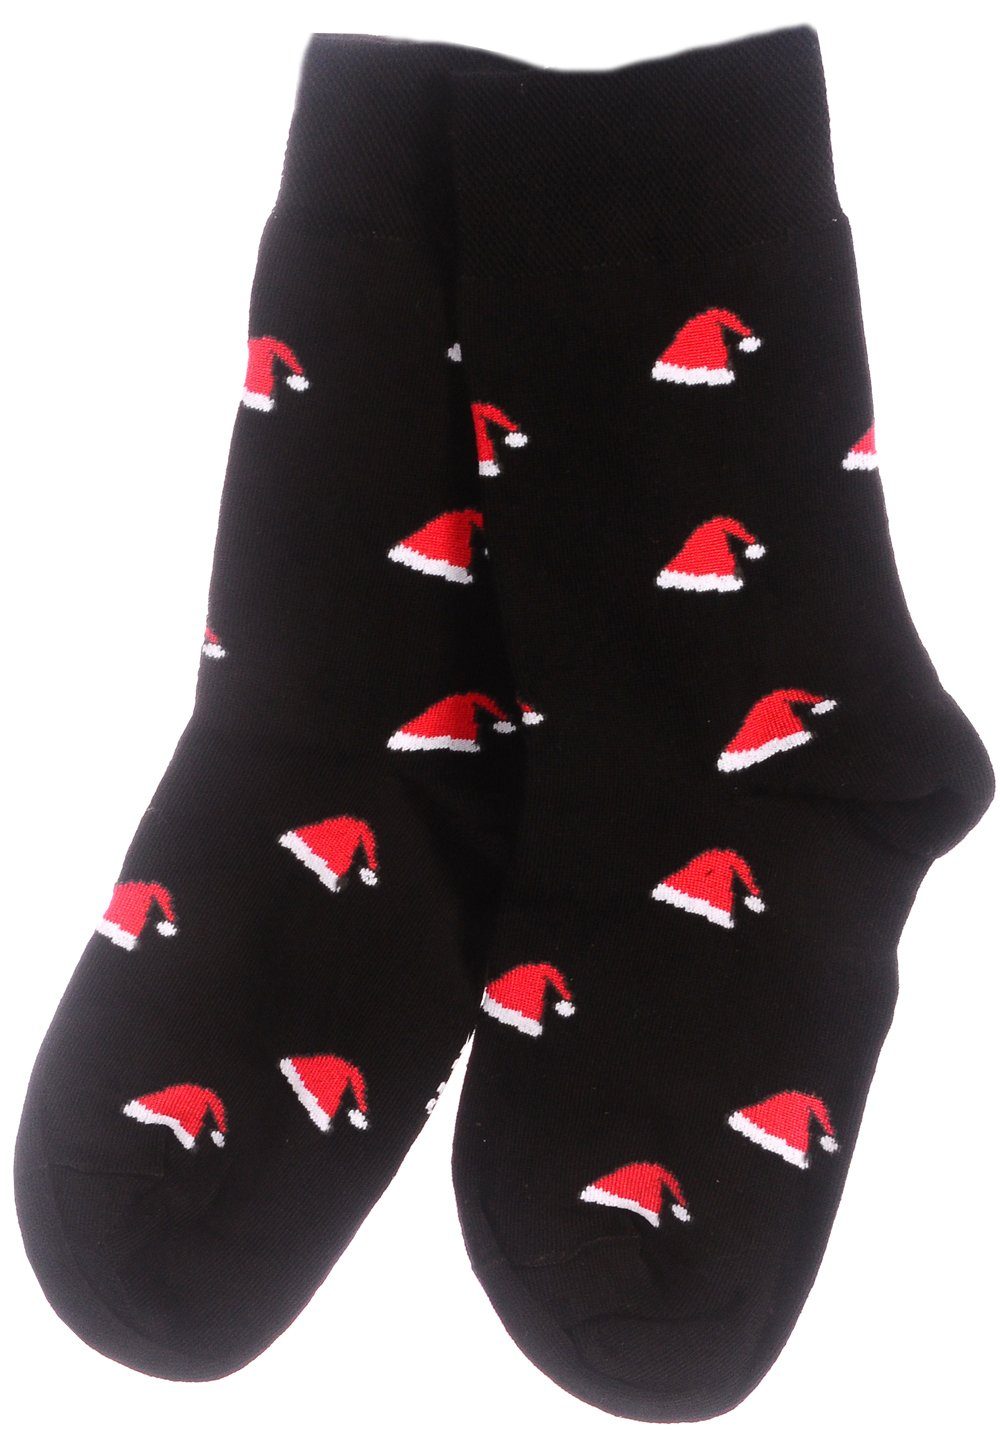 Martinex Socken Lustige bunte witzige Strümpfe 35 38 39 42 43 46 Weihnachtssocken